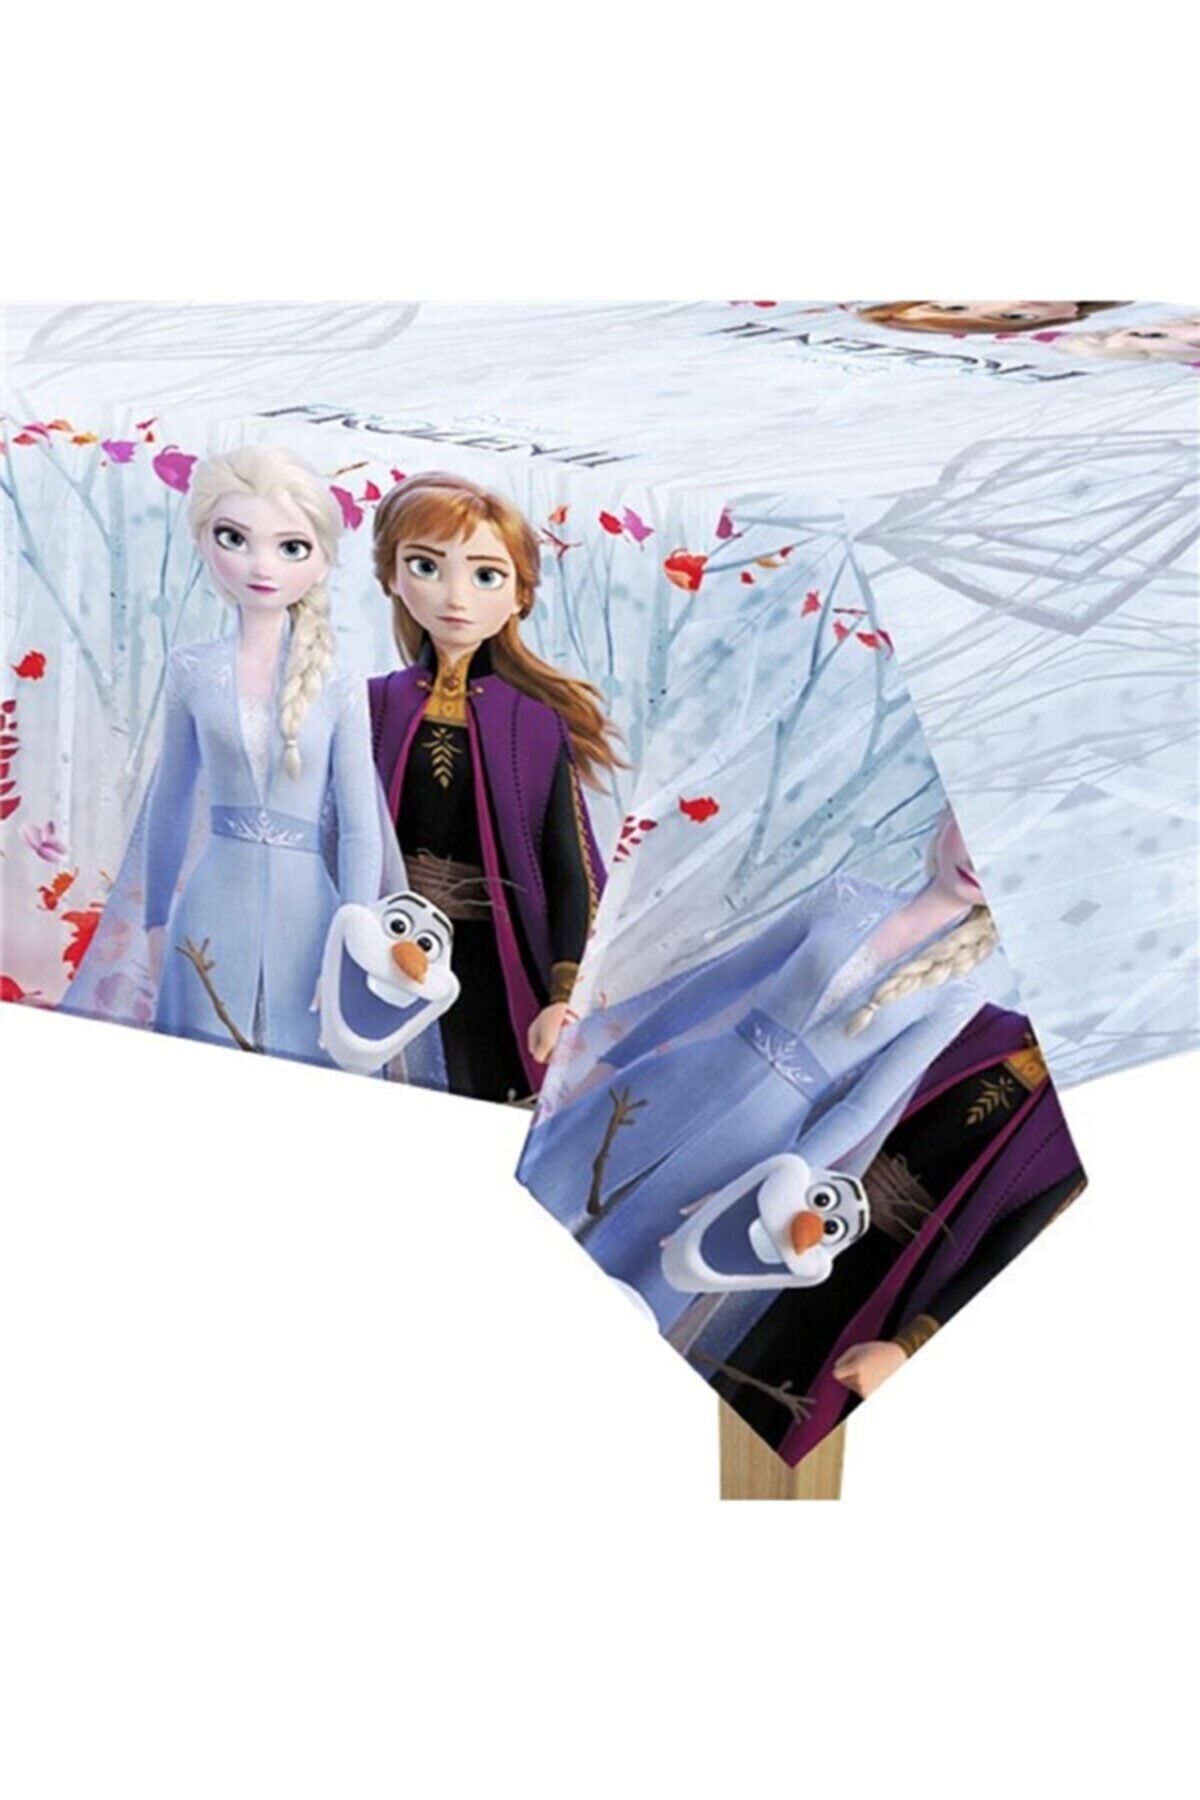 Party City Elsa Anna Karakterli Figürlü Frozen Karlar Ülkesi Temalı Konsepti 120x180 cm